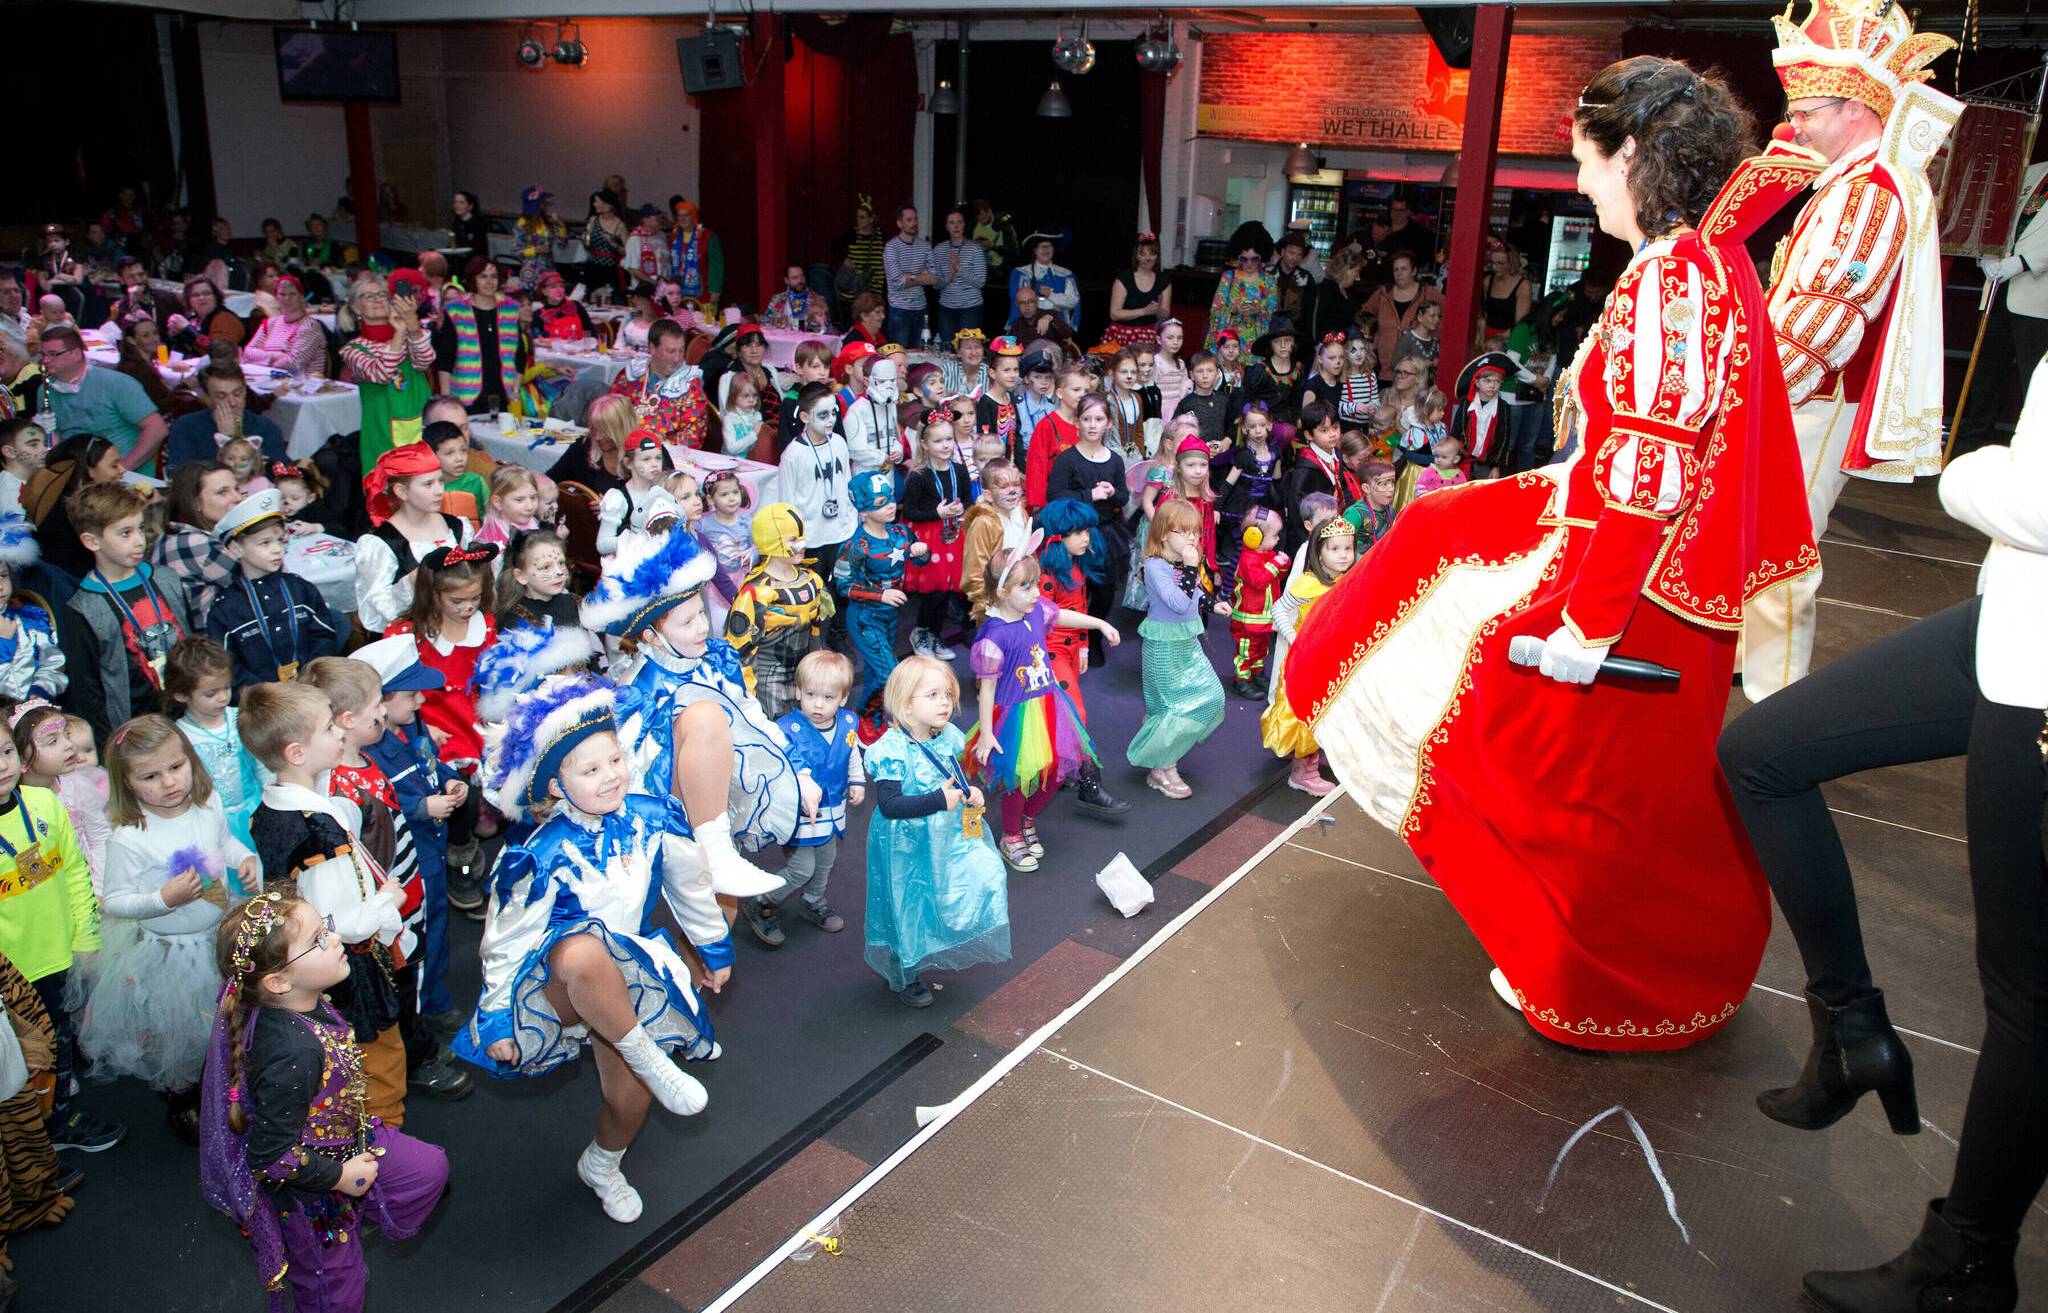 Närrischer Kostümwettbewerb soll trotz Absage für Karnevalsflair sorgen